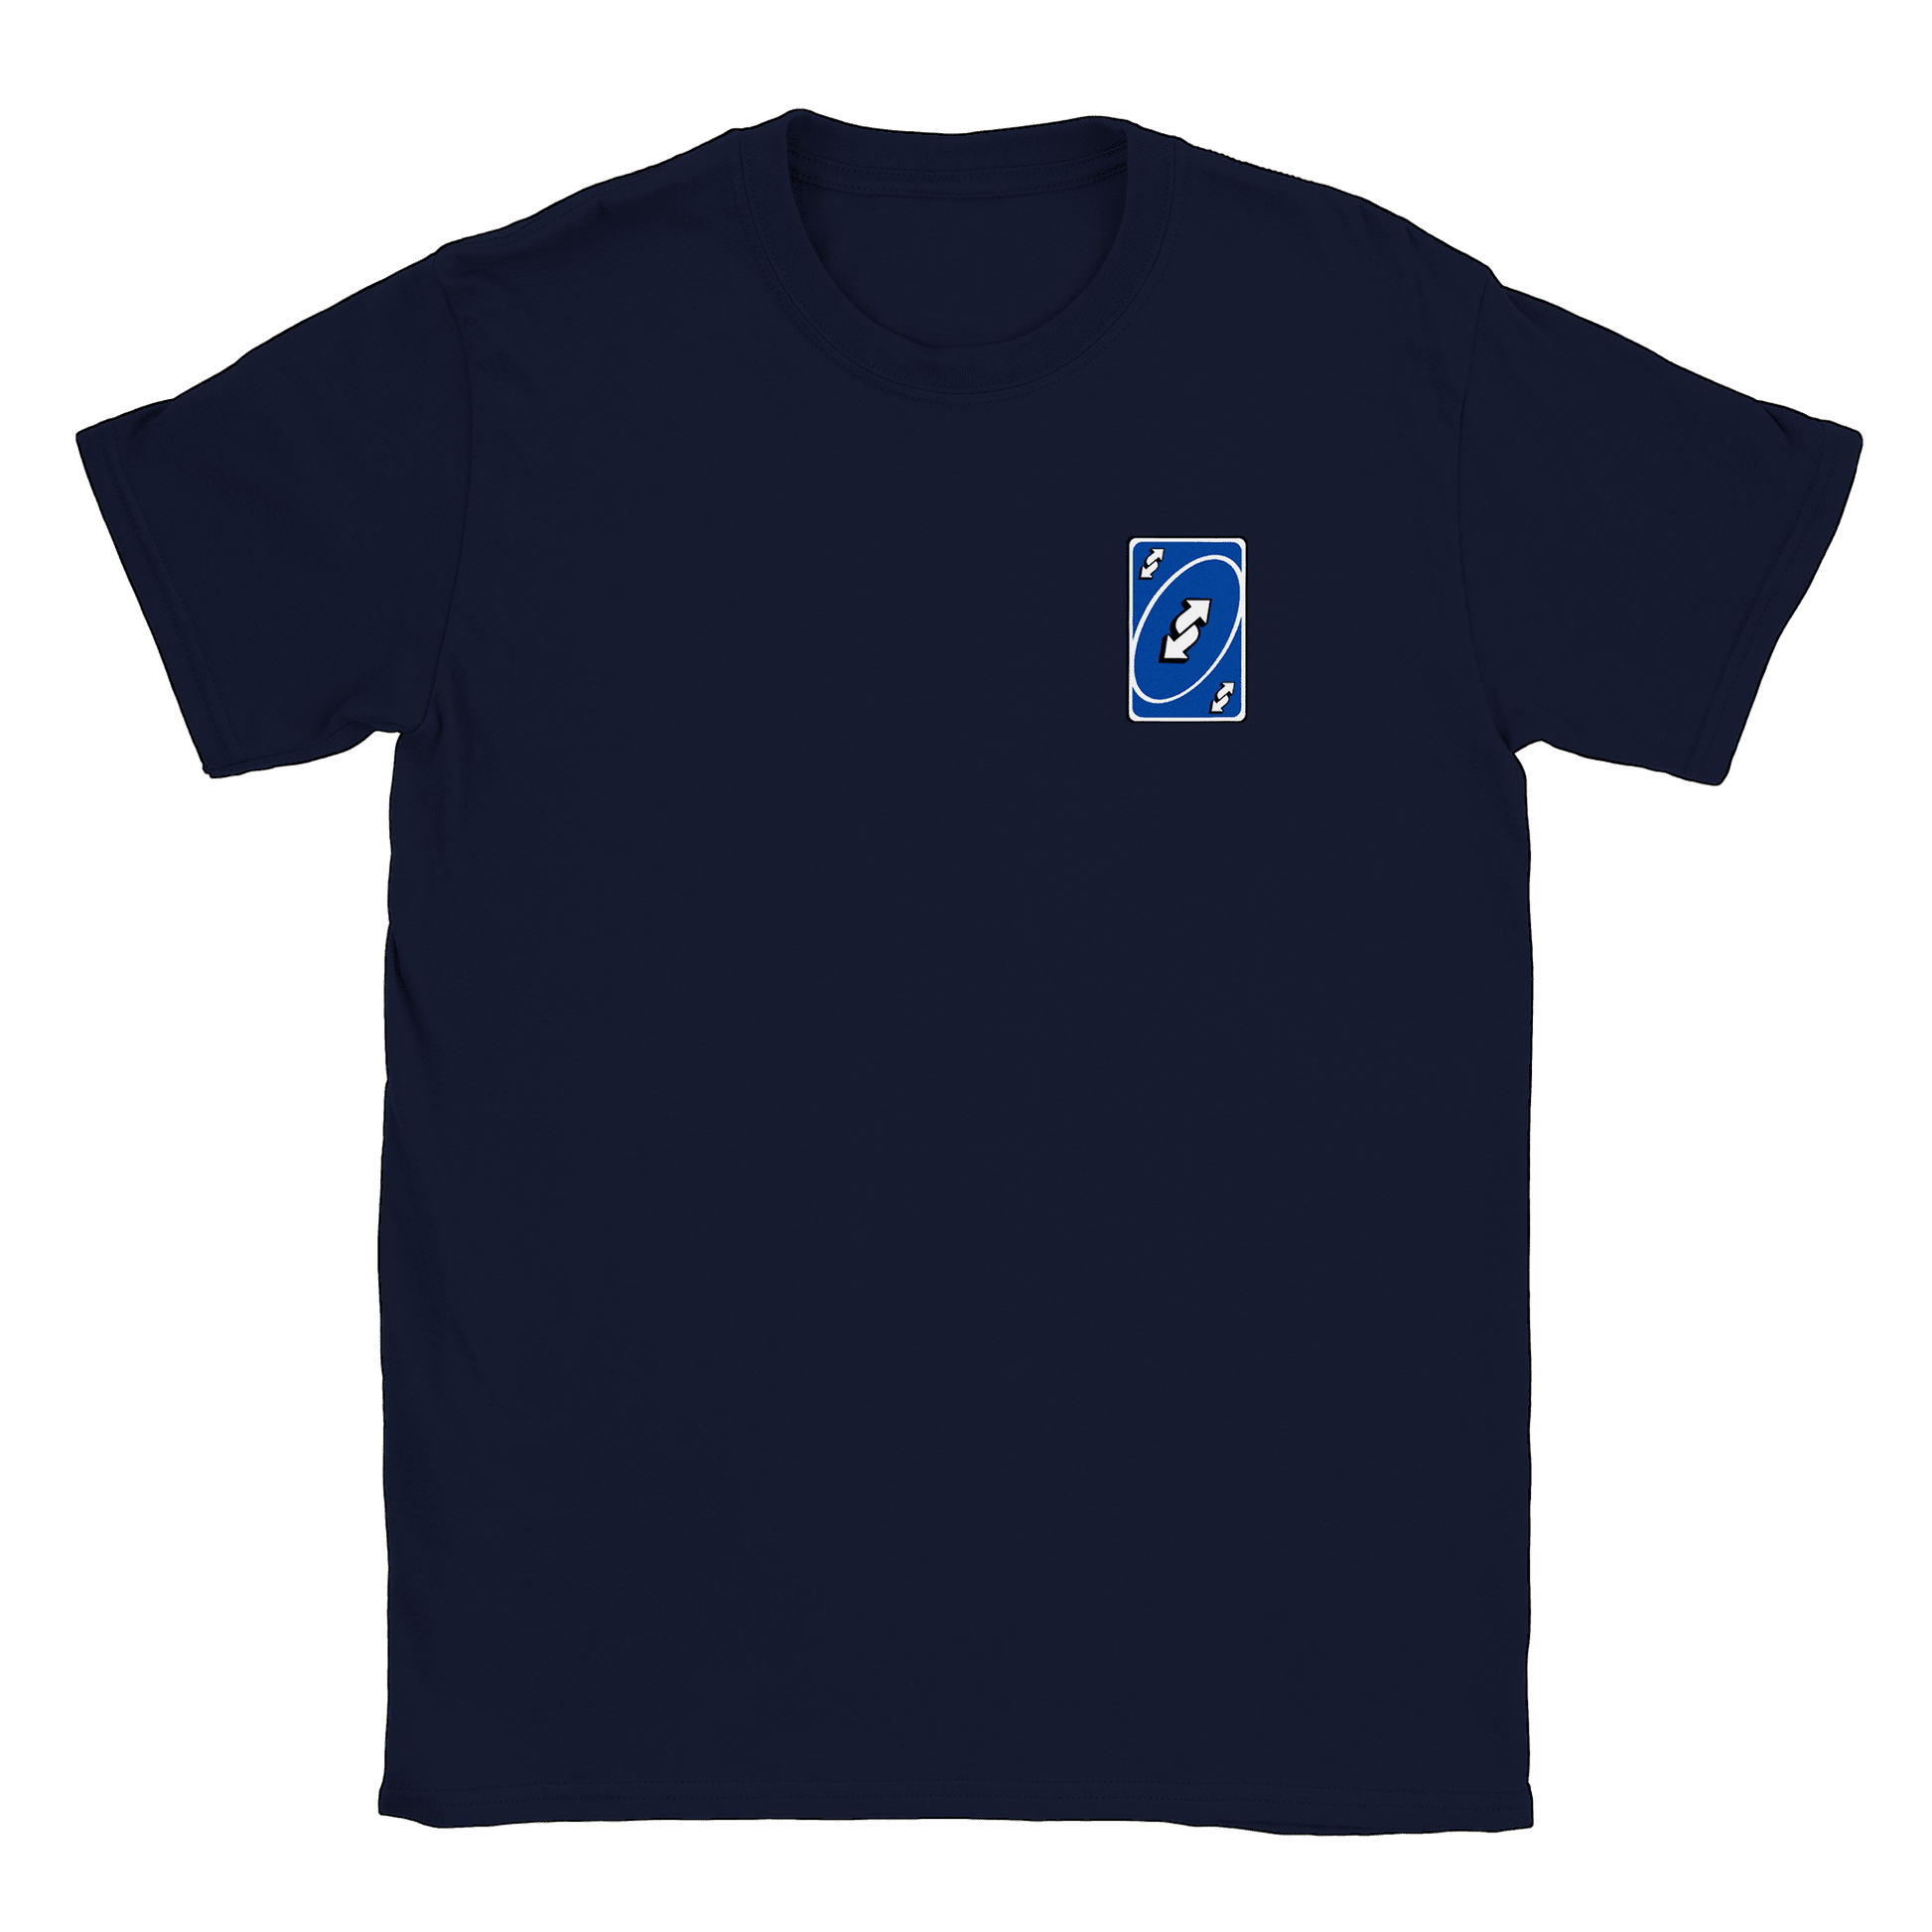 Vändkort litet - T-shirt Navy